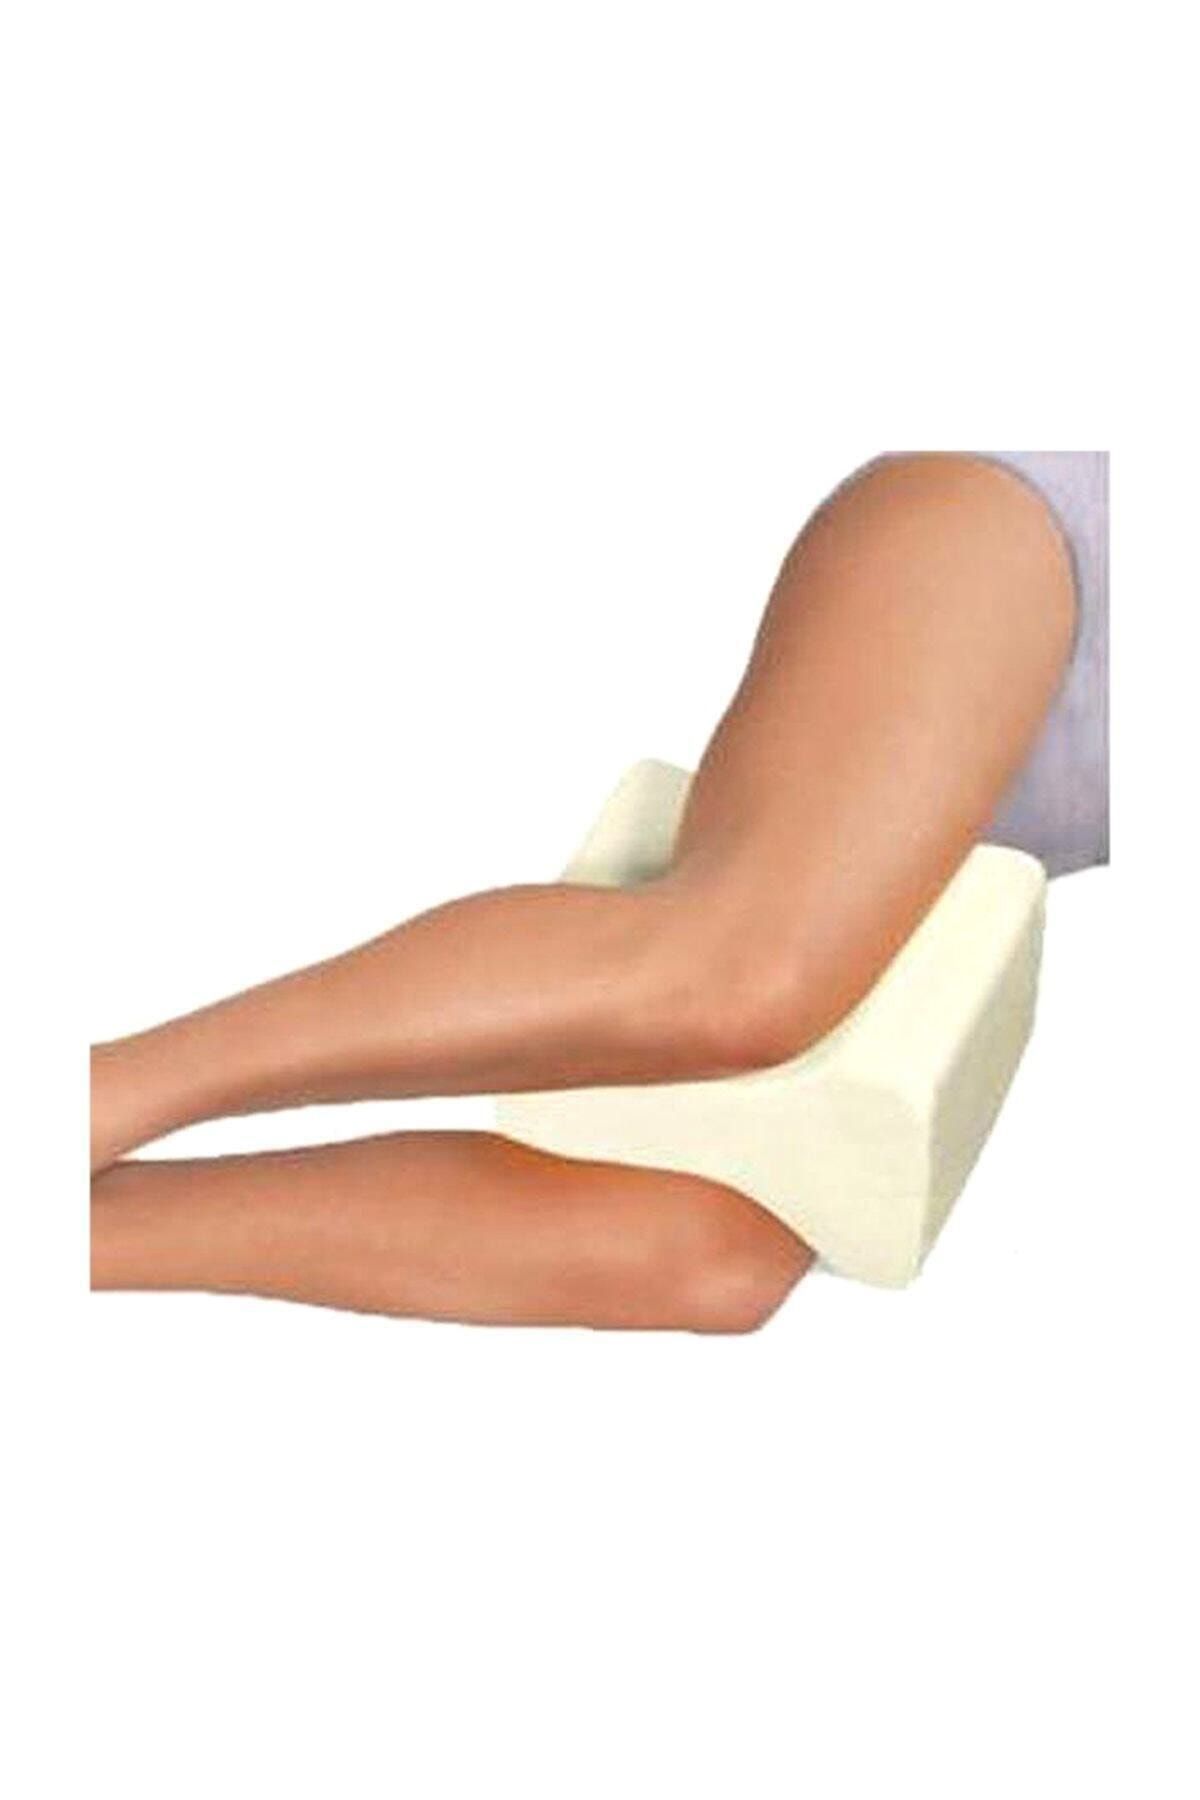 Тазобедренная подушка купить. Подушка после эндопротезирования тазобедренного сустава. Подушка ортопедическая для ног бедра. Подушка после операции на тазобедренном суставе. Подушка между ног после эндопротезирования тазобедренного сустава.